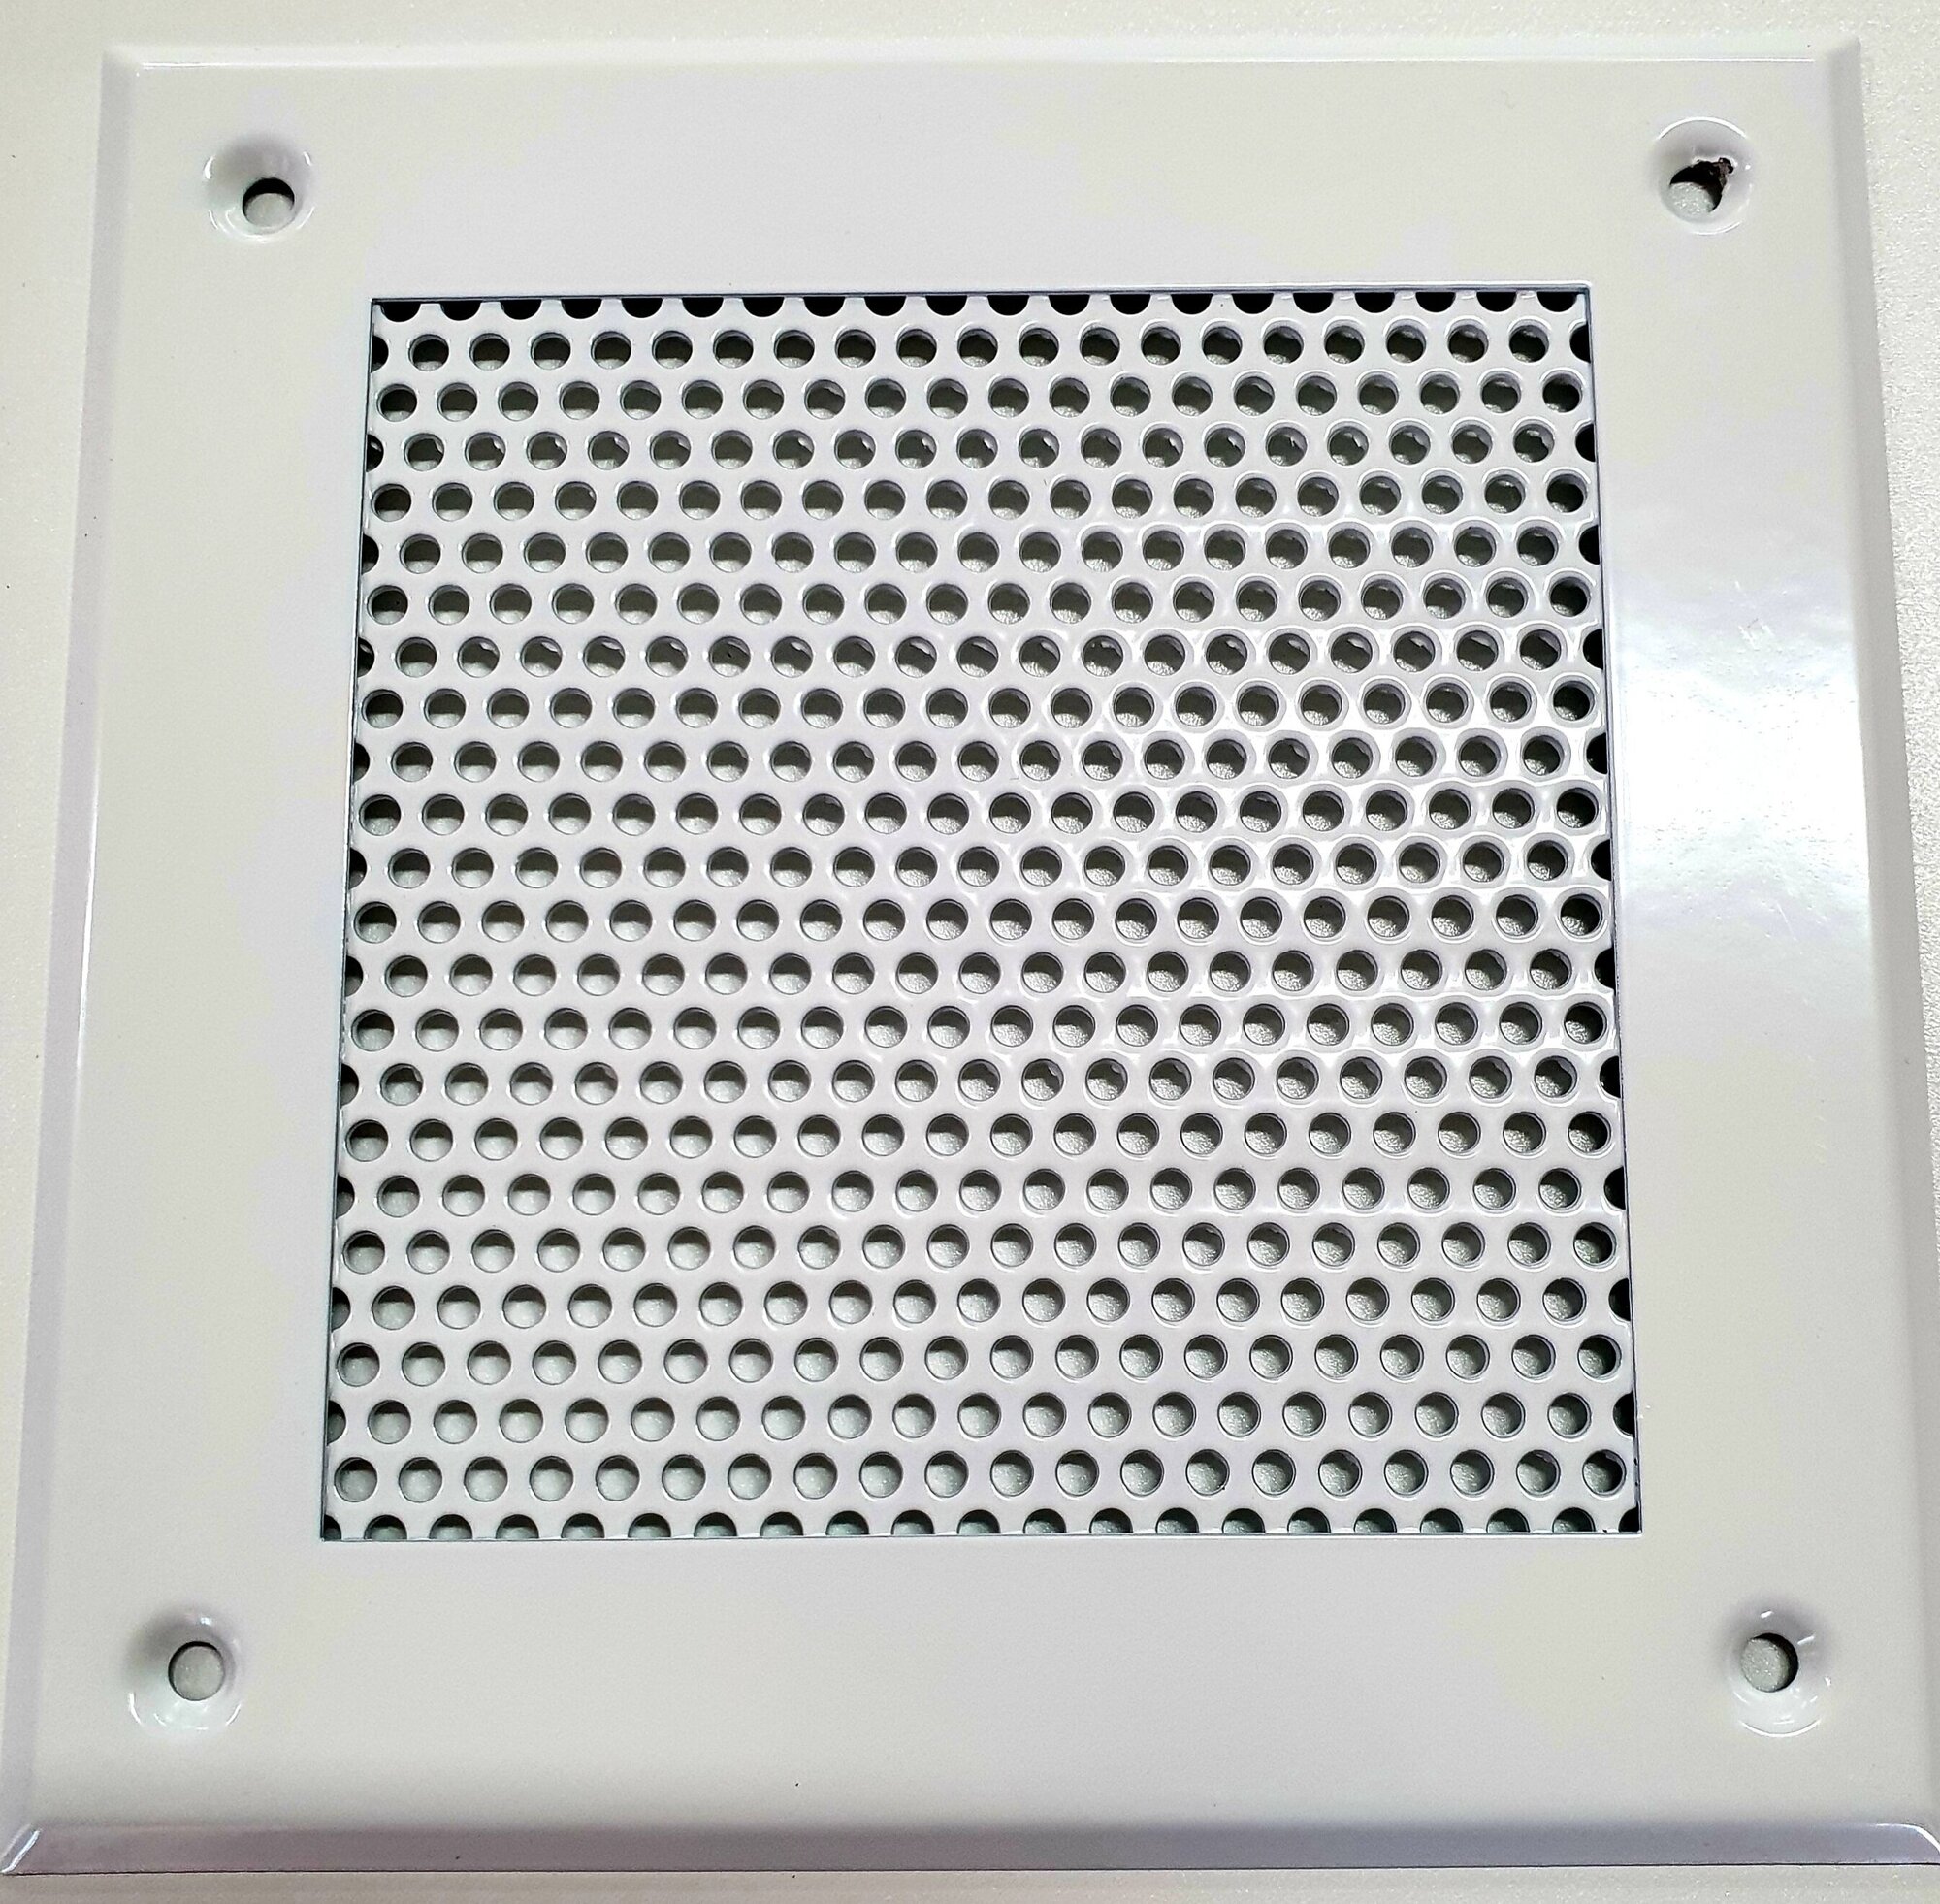 Вентиляционная решетка металлическая 200х200мм тип перфорации кружок (Rv 3-5) цвет белый.